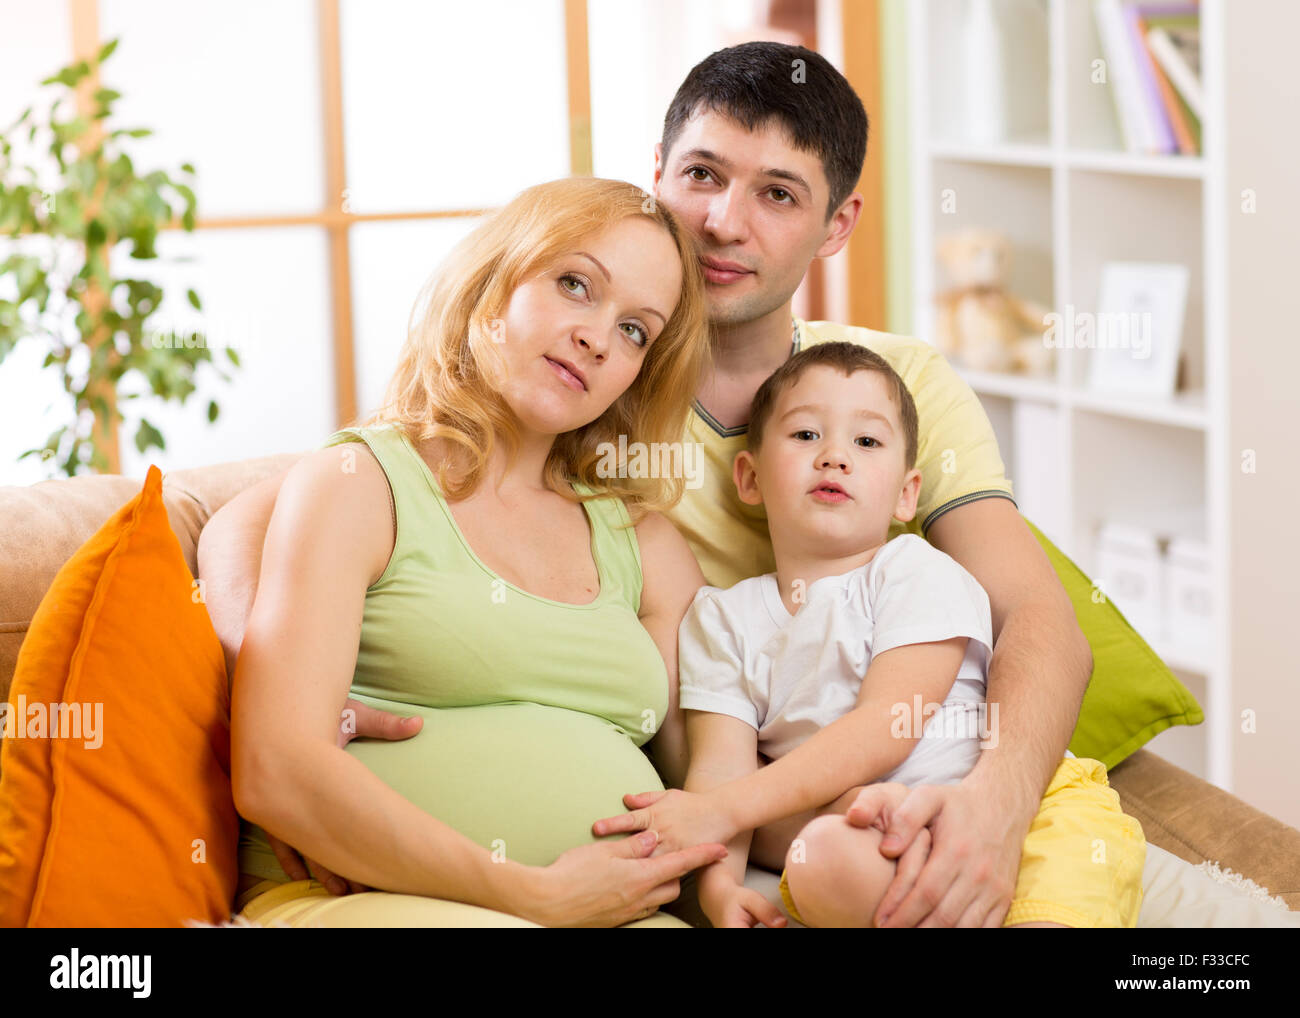 La famiglia felice aspetta il bambino. Donna incinta con il marito e il piccolo figlio insieme Foto Stock